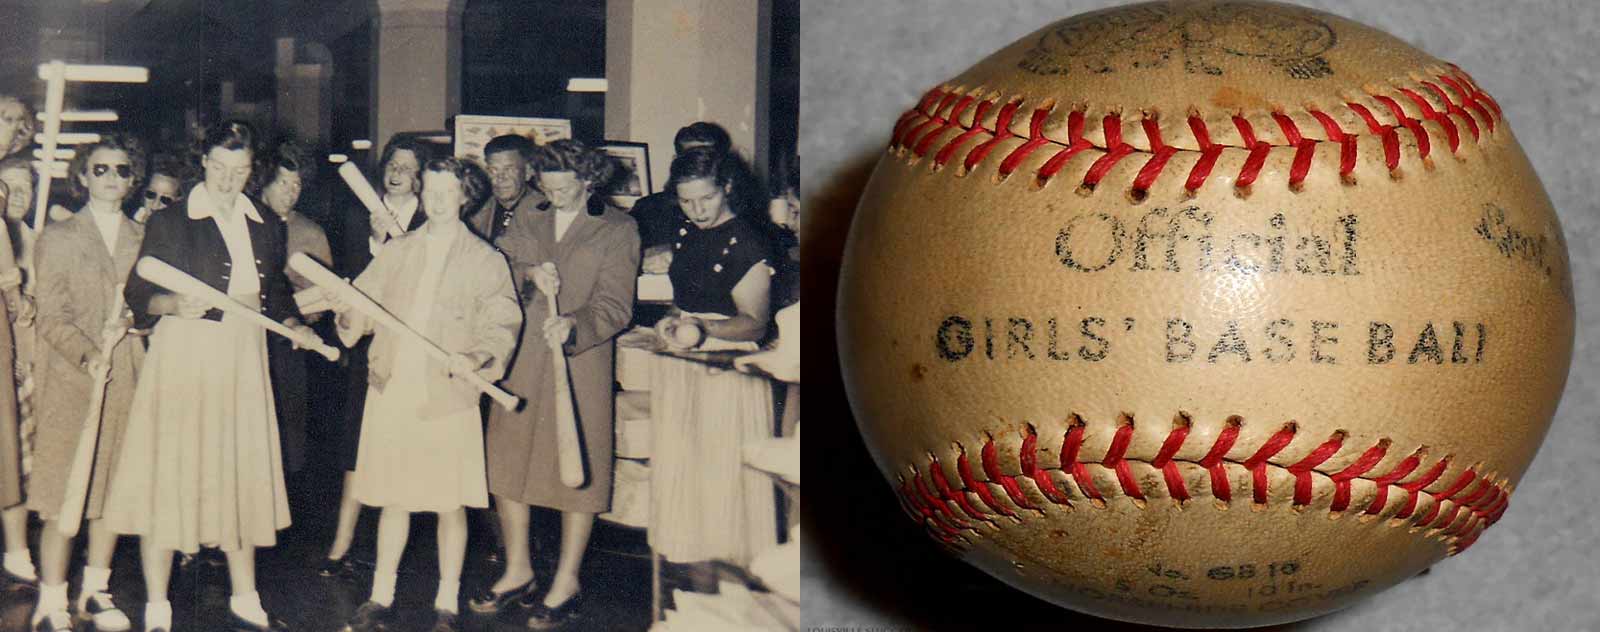 equipe feminine baseball